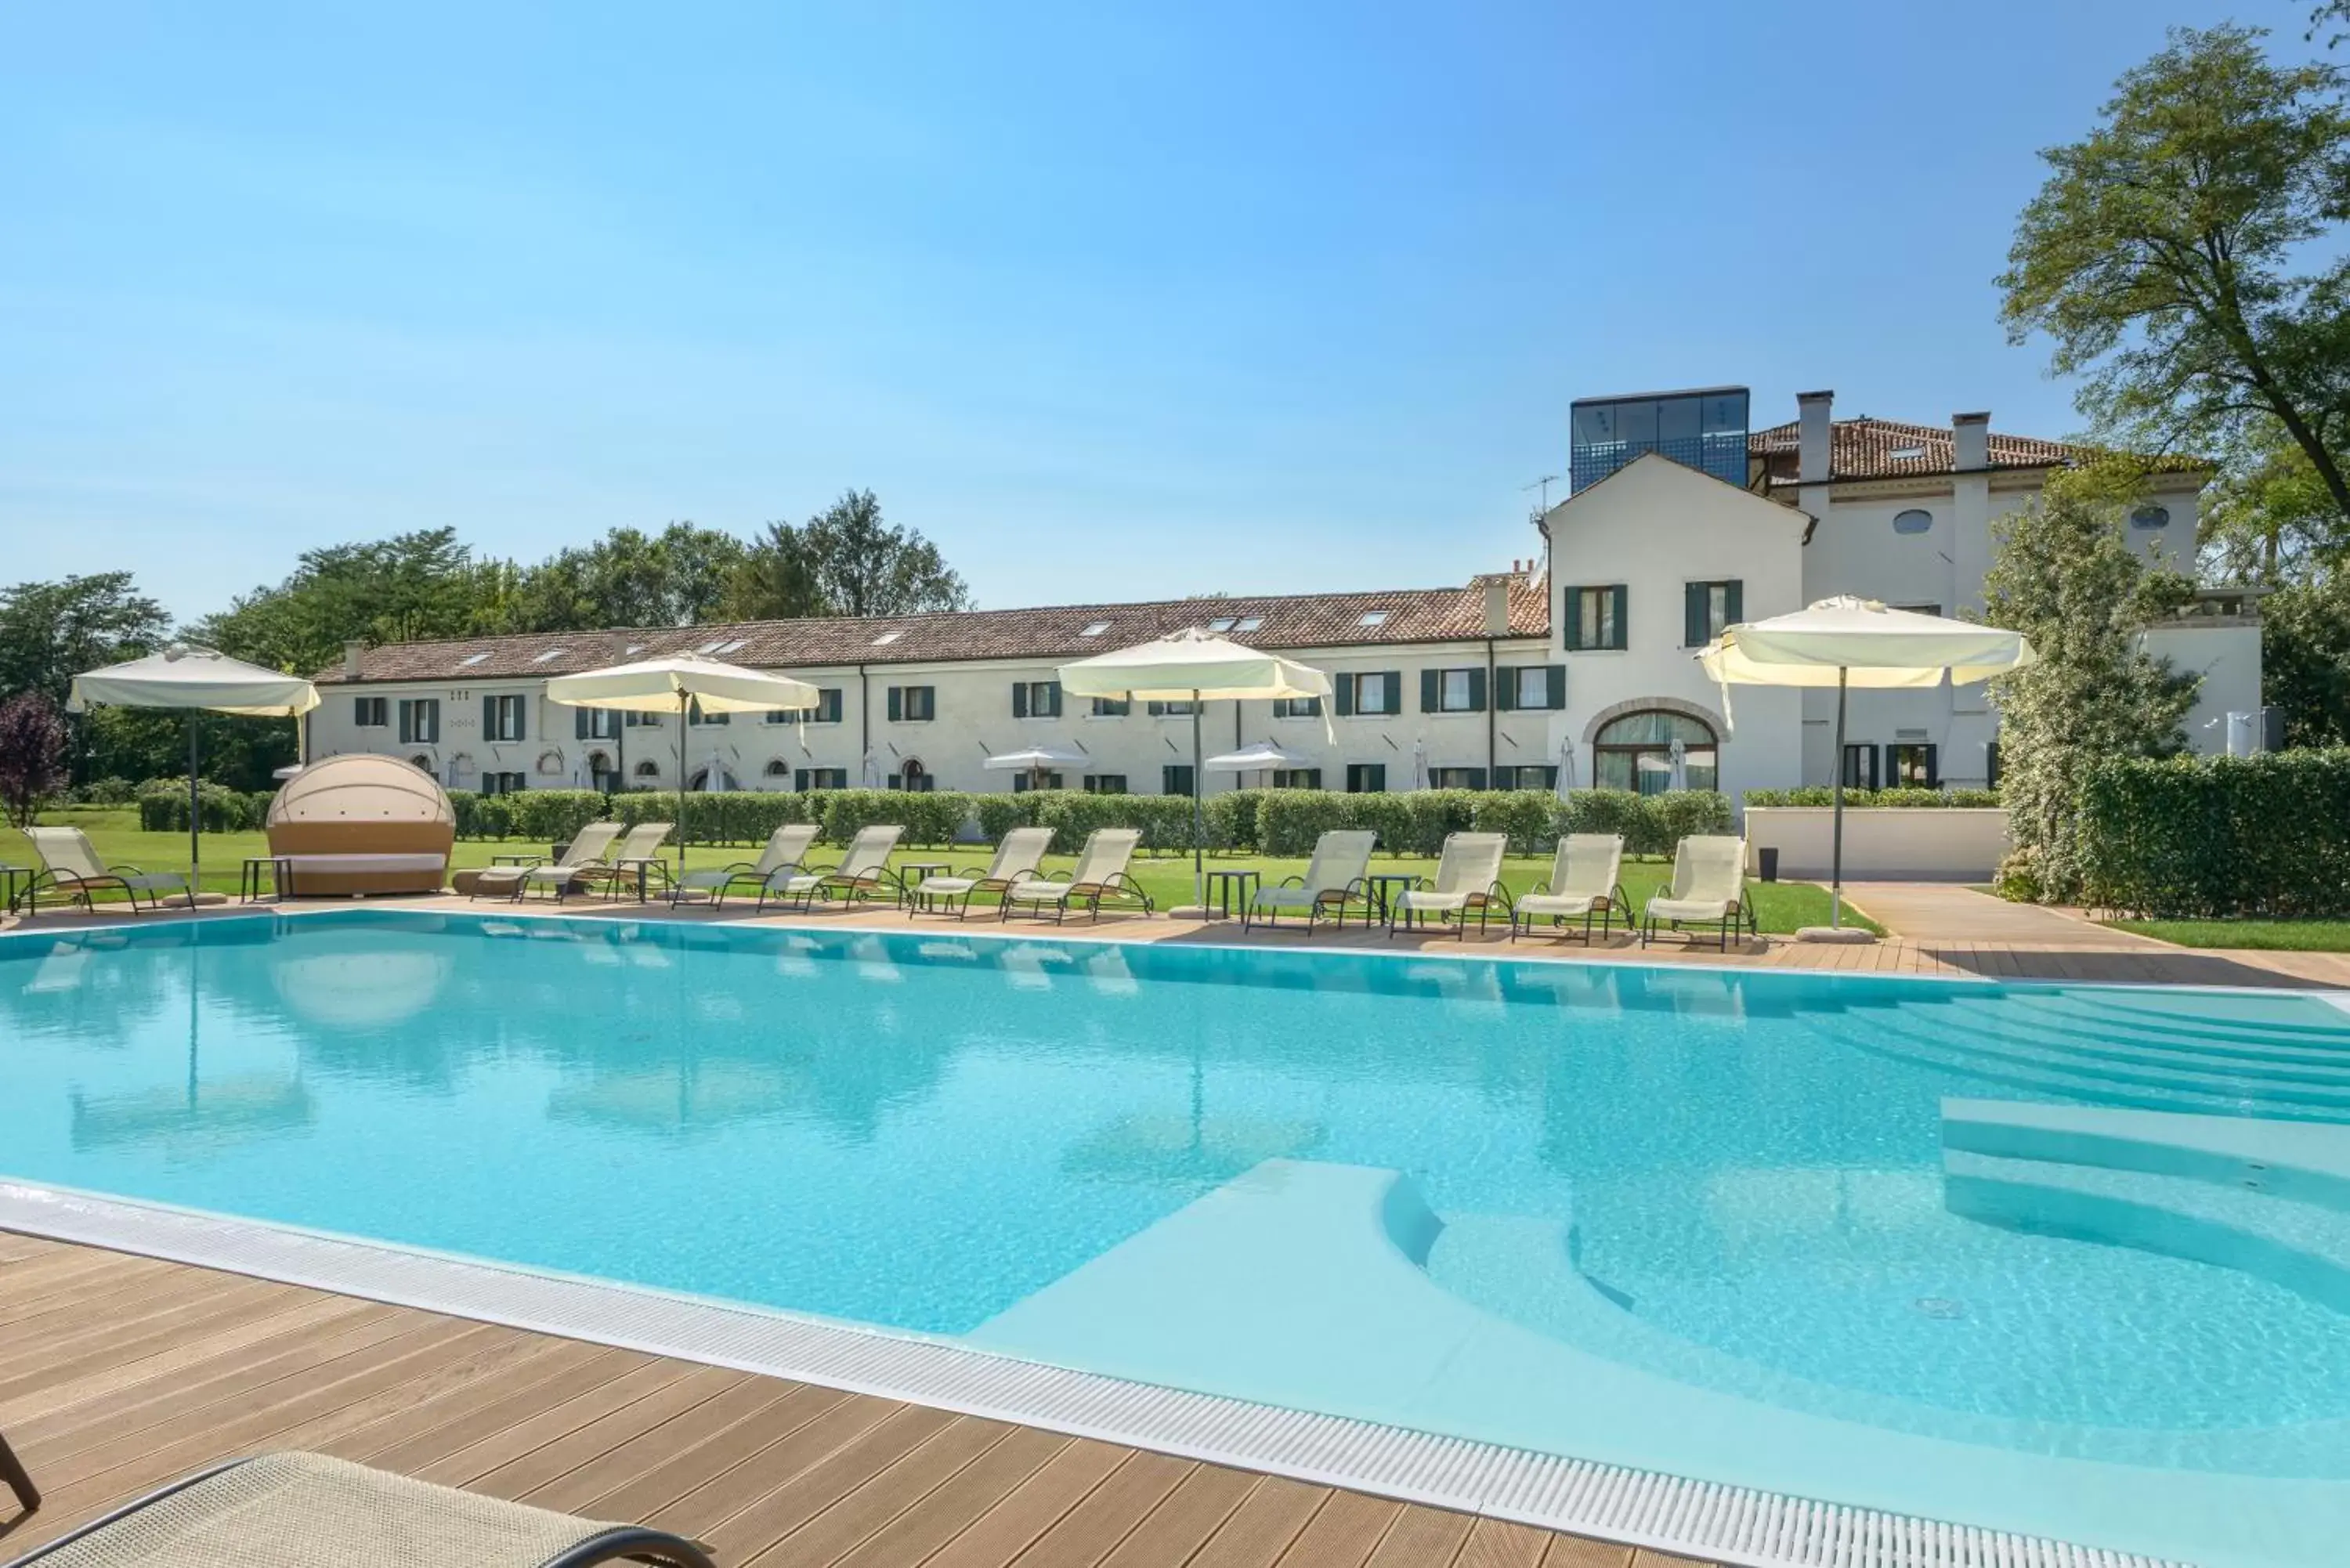 Property building, Swimming Pool in Hotel Villa Barbarich Venice Mestre